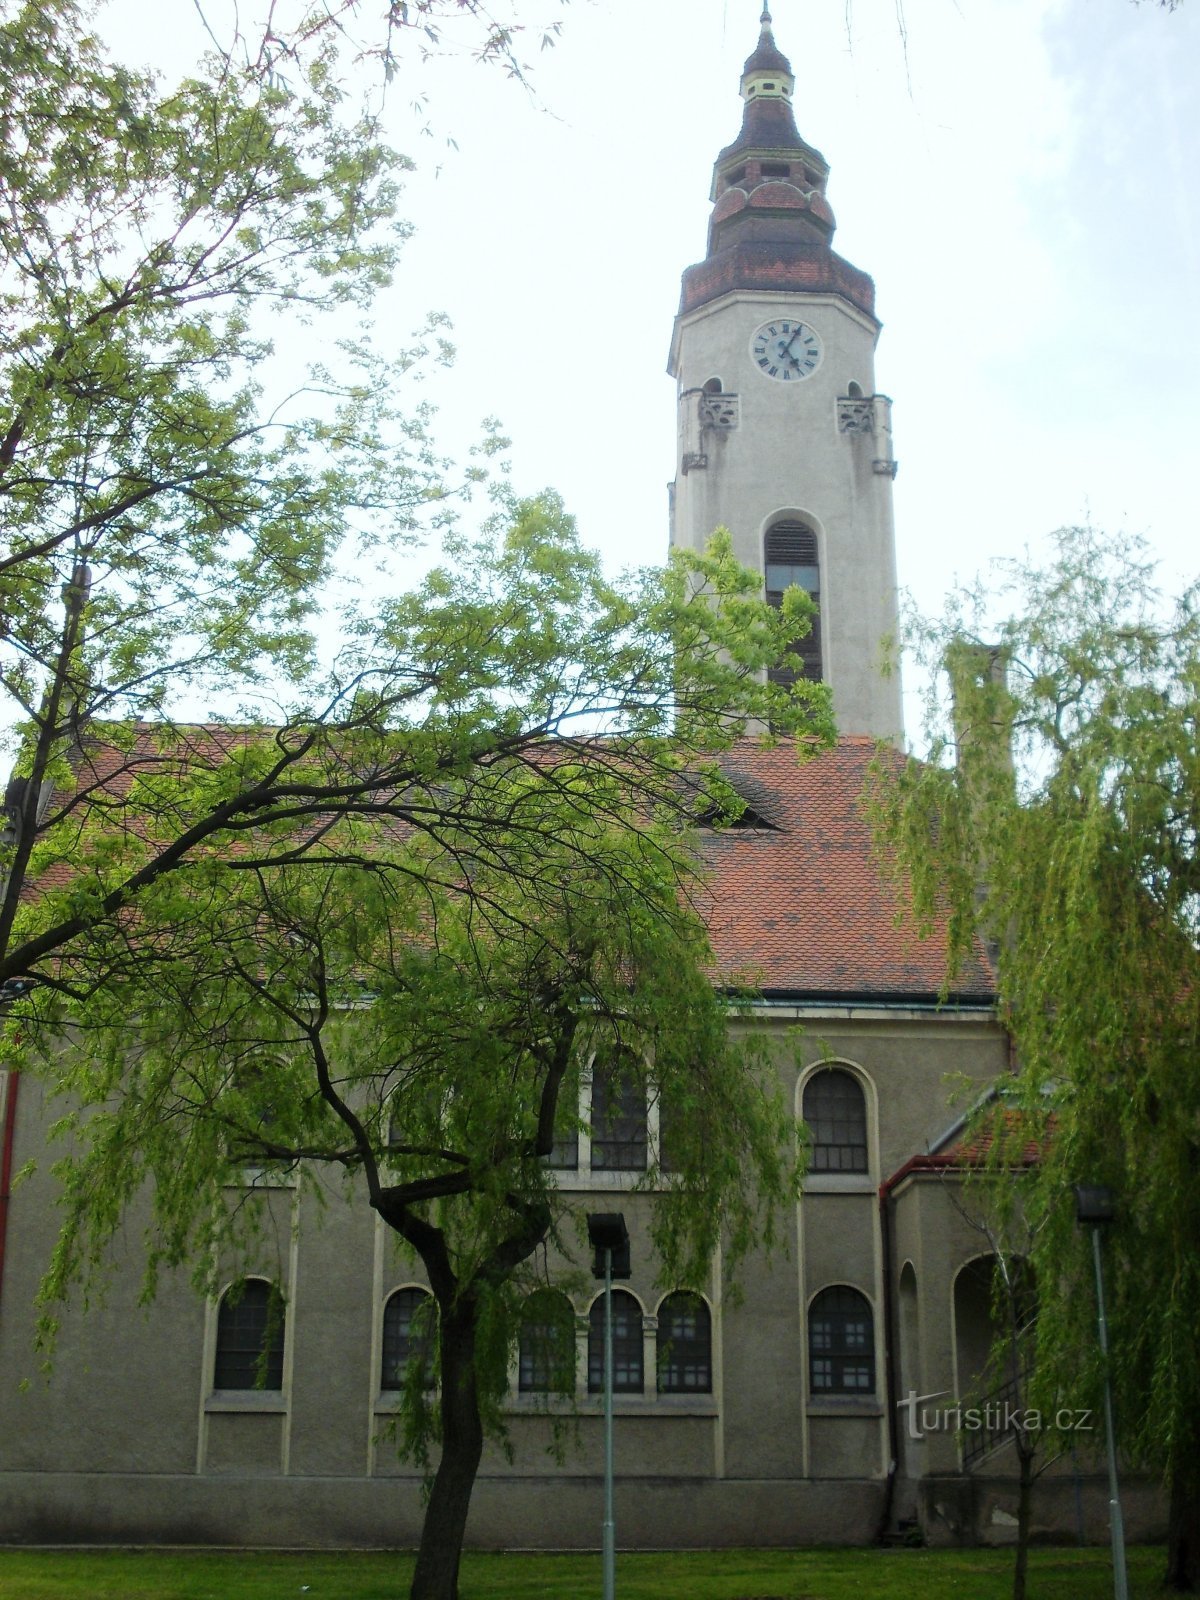 una iglesia con una torre de casi 42 metros de altura